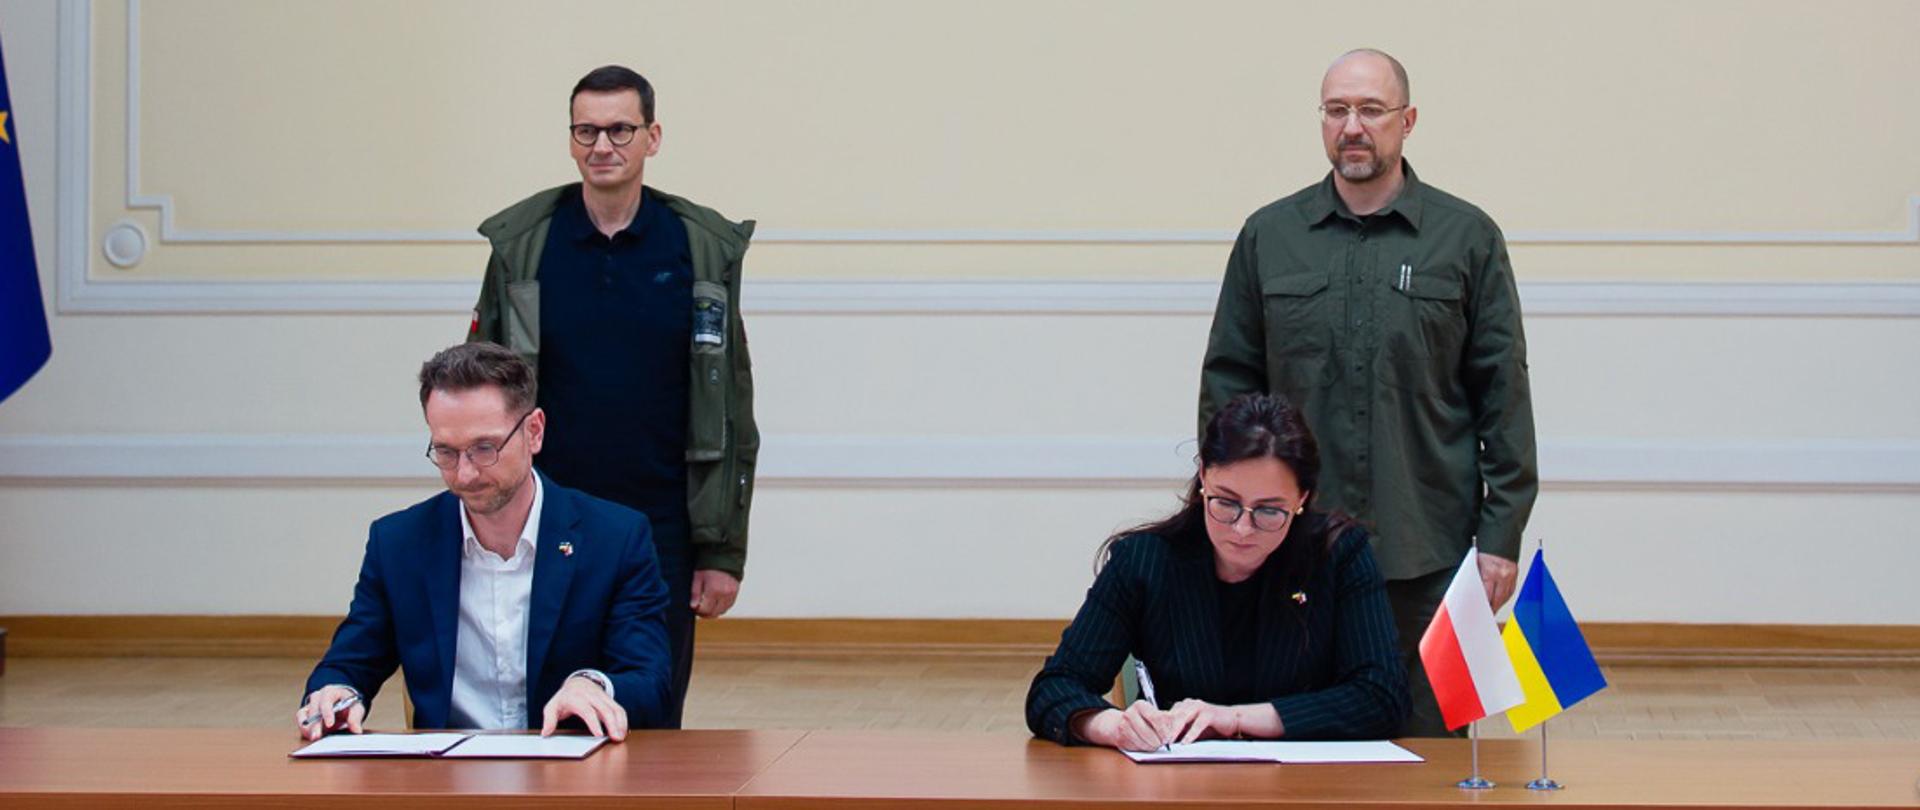 Waldemar Buda i Julia Svyrydenko siedzą przy stole, podpisują porozumienie. Za nimi stoja premierzy obu krajów.